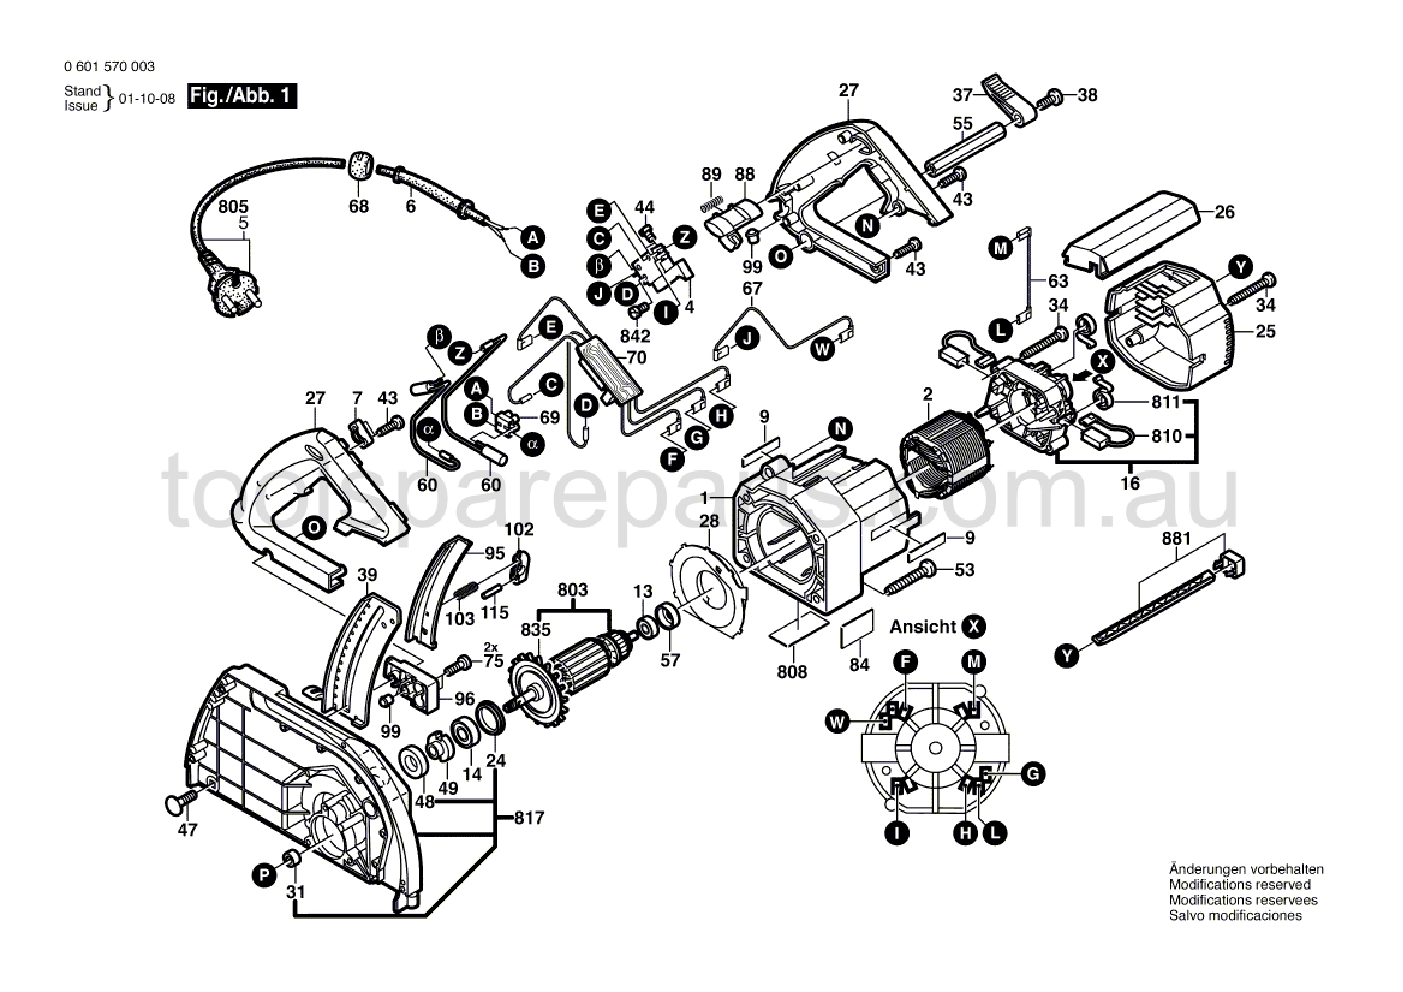 Bosch GKS 68 B 0601570037  Diagram 1